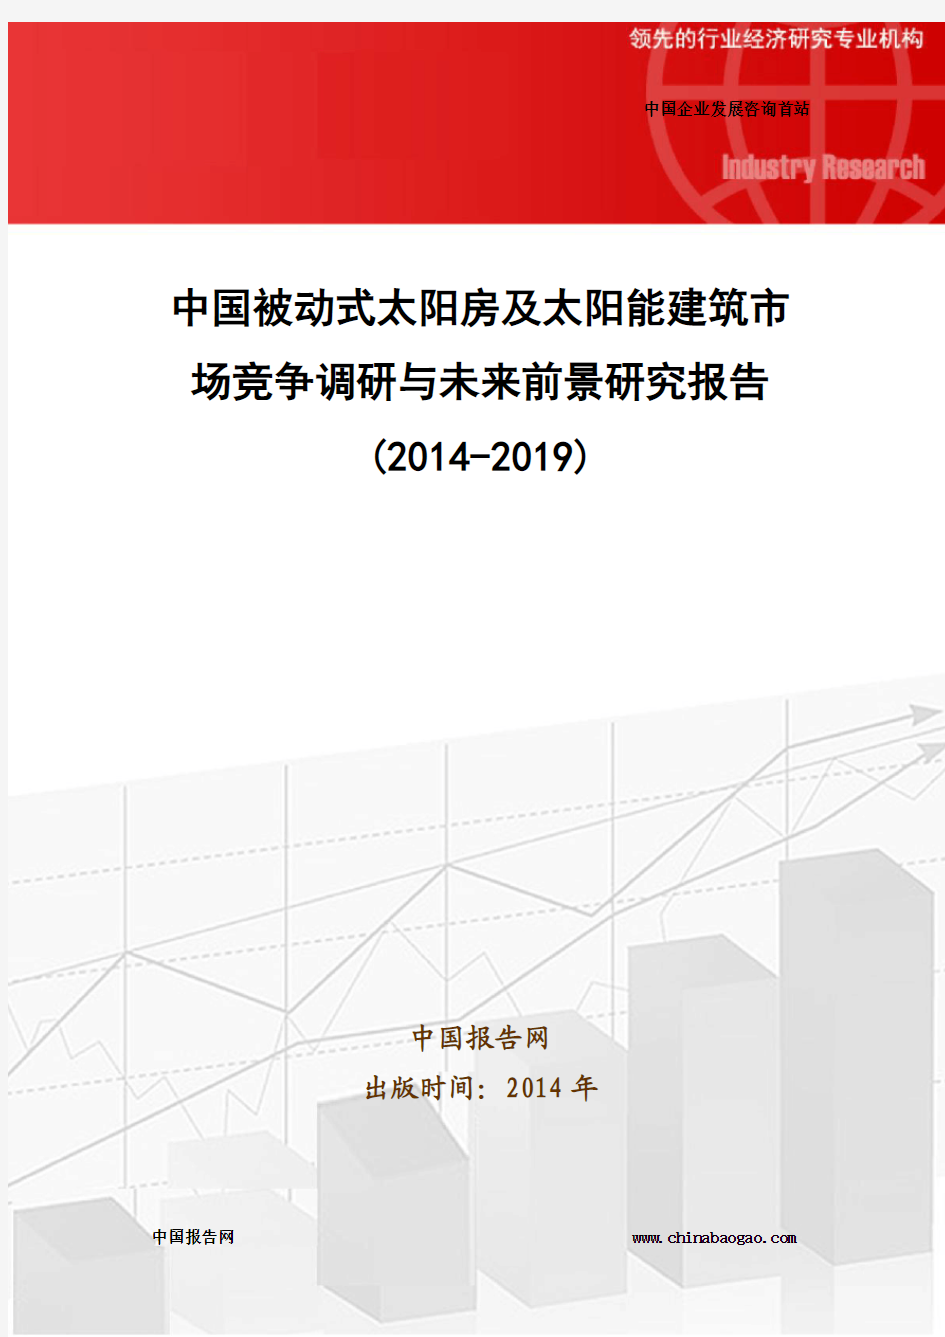 中国被动式太阳房及太阳能建筑市场竞争调研与未来前景研究报告(2014-2019)